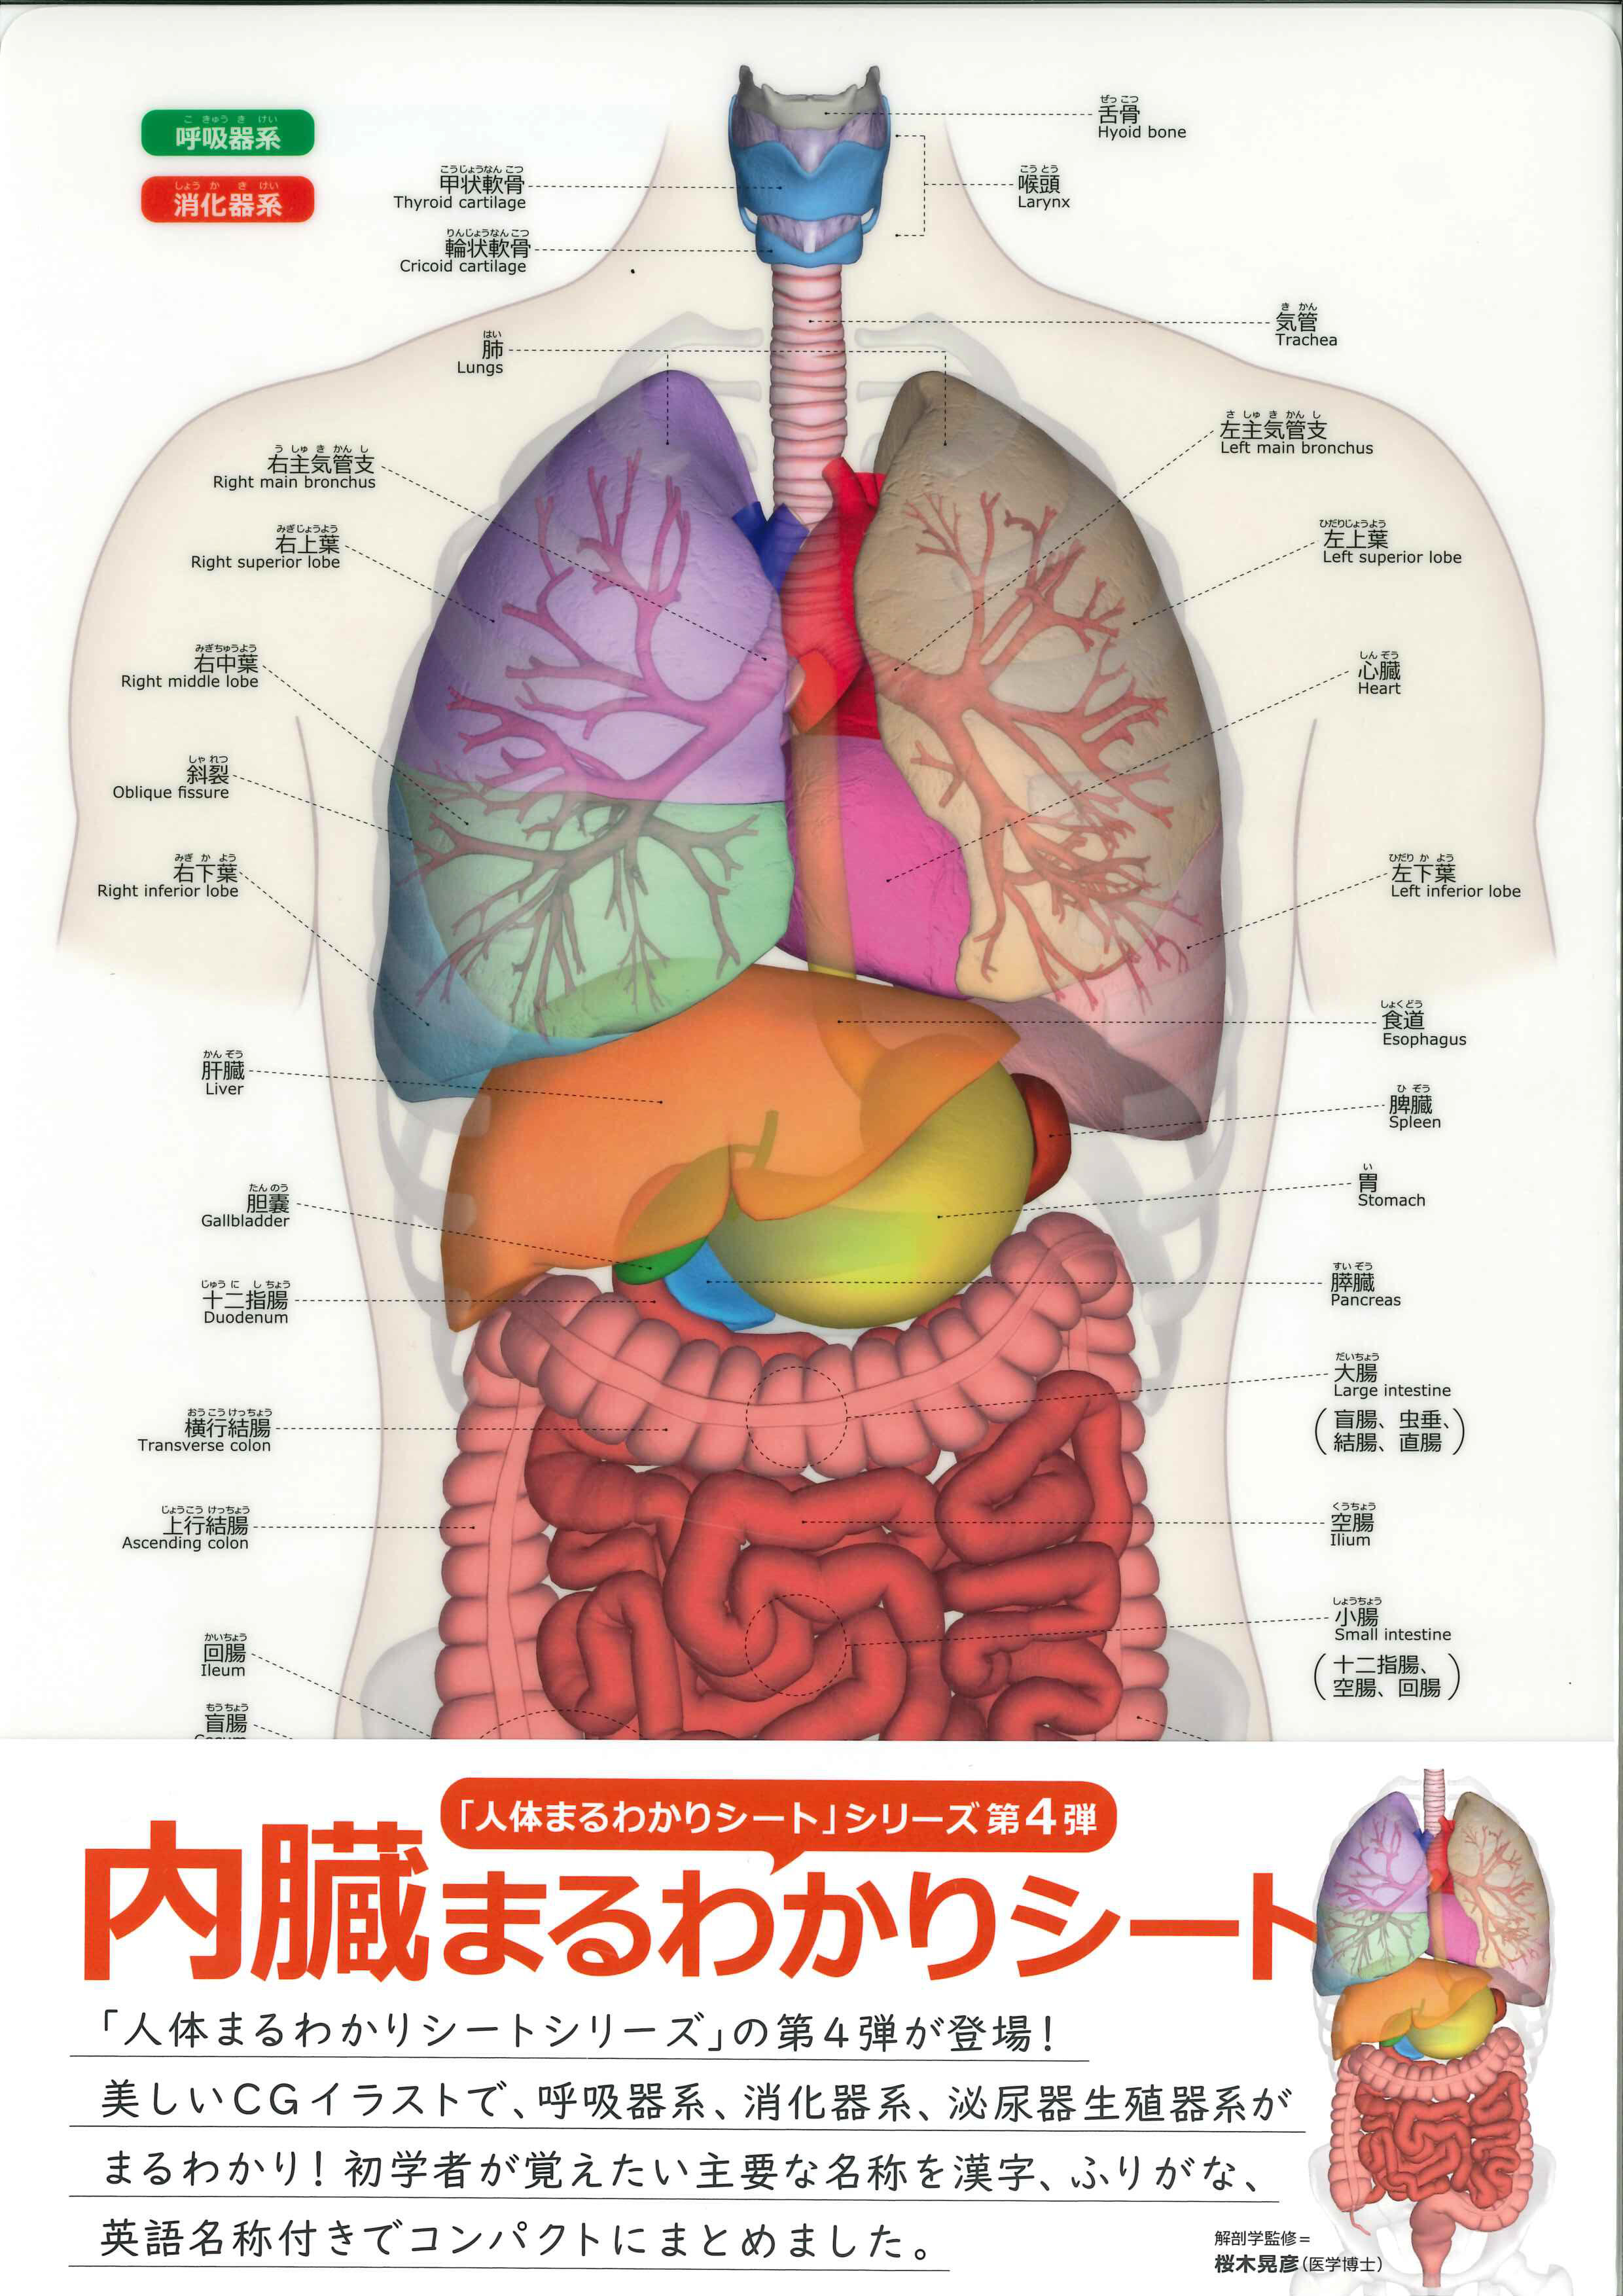 桜木晃彦教授が監修を担当した「内臓まるわかりシート」が、5月14日に発売